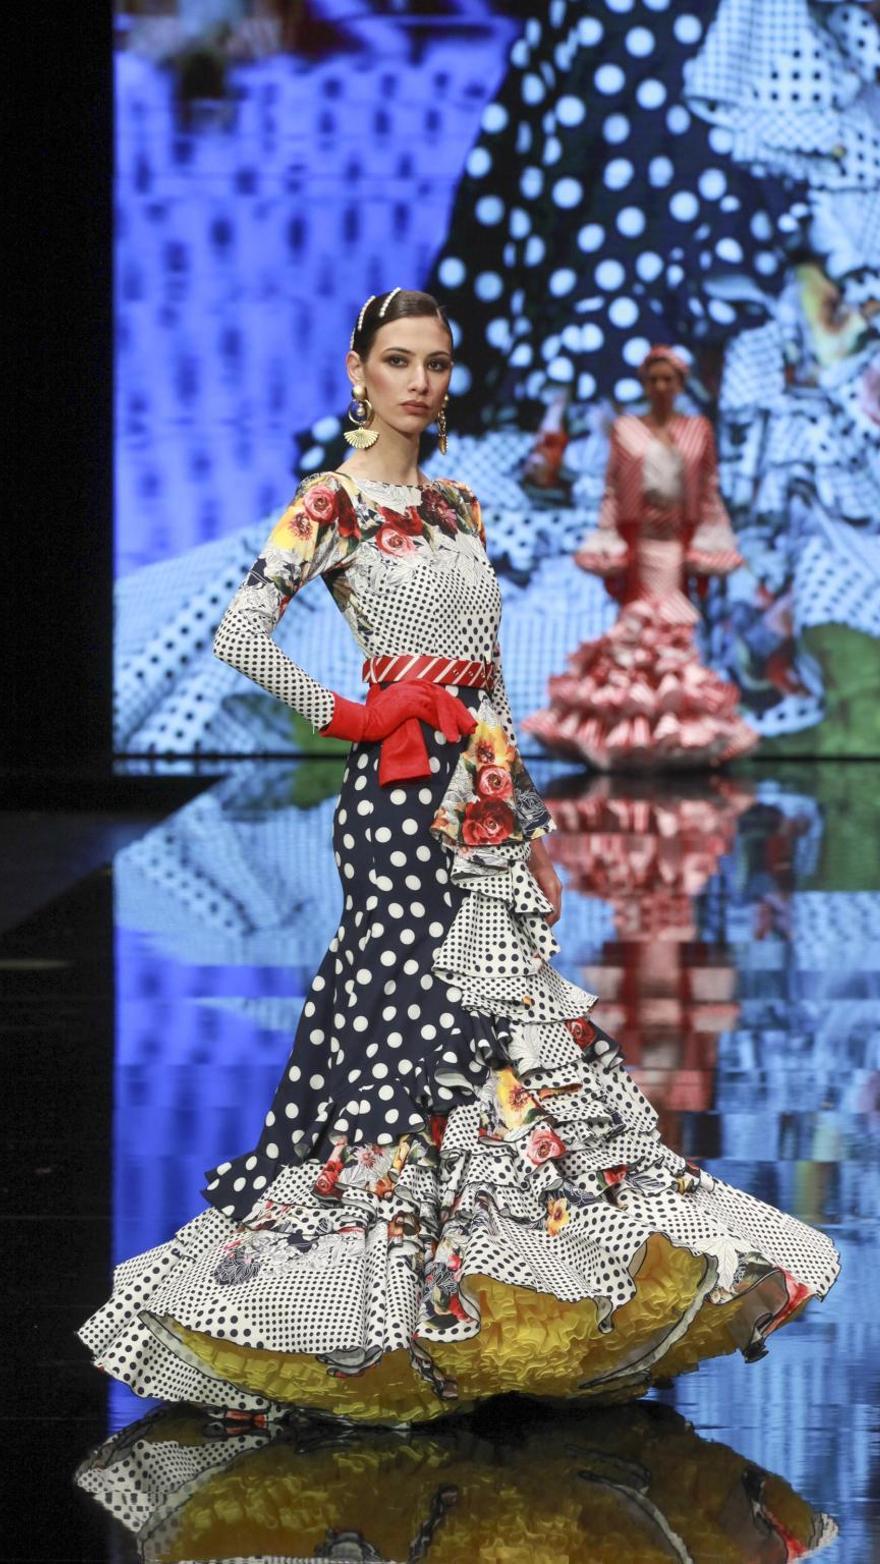 Vestido de Flamenca Malagueña